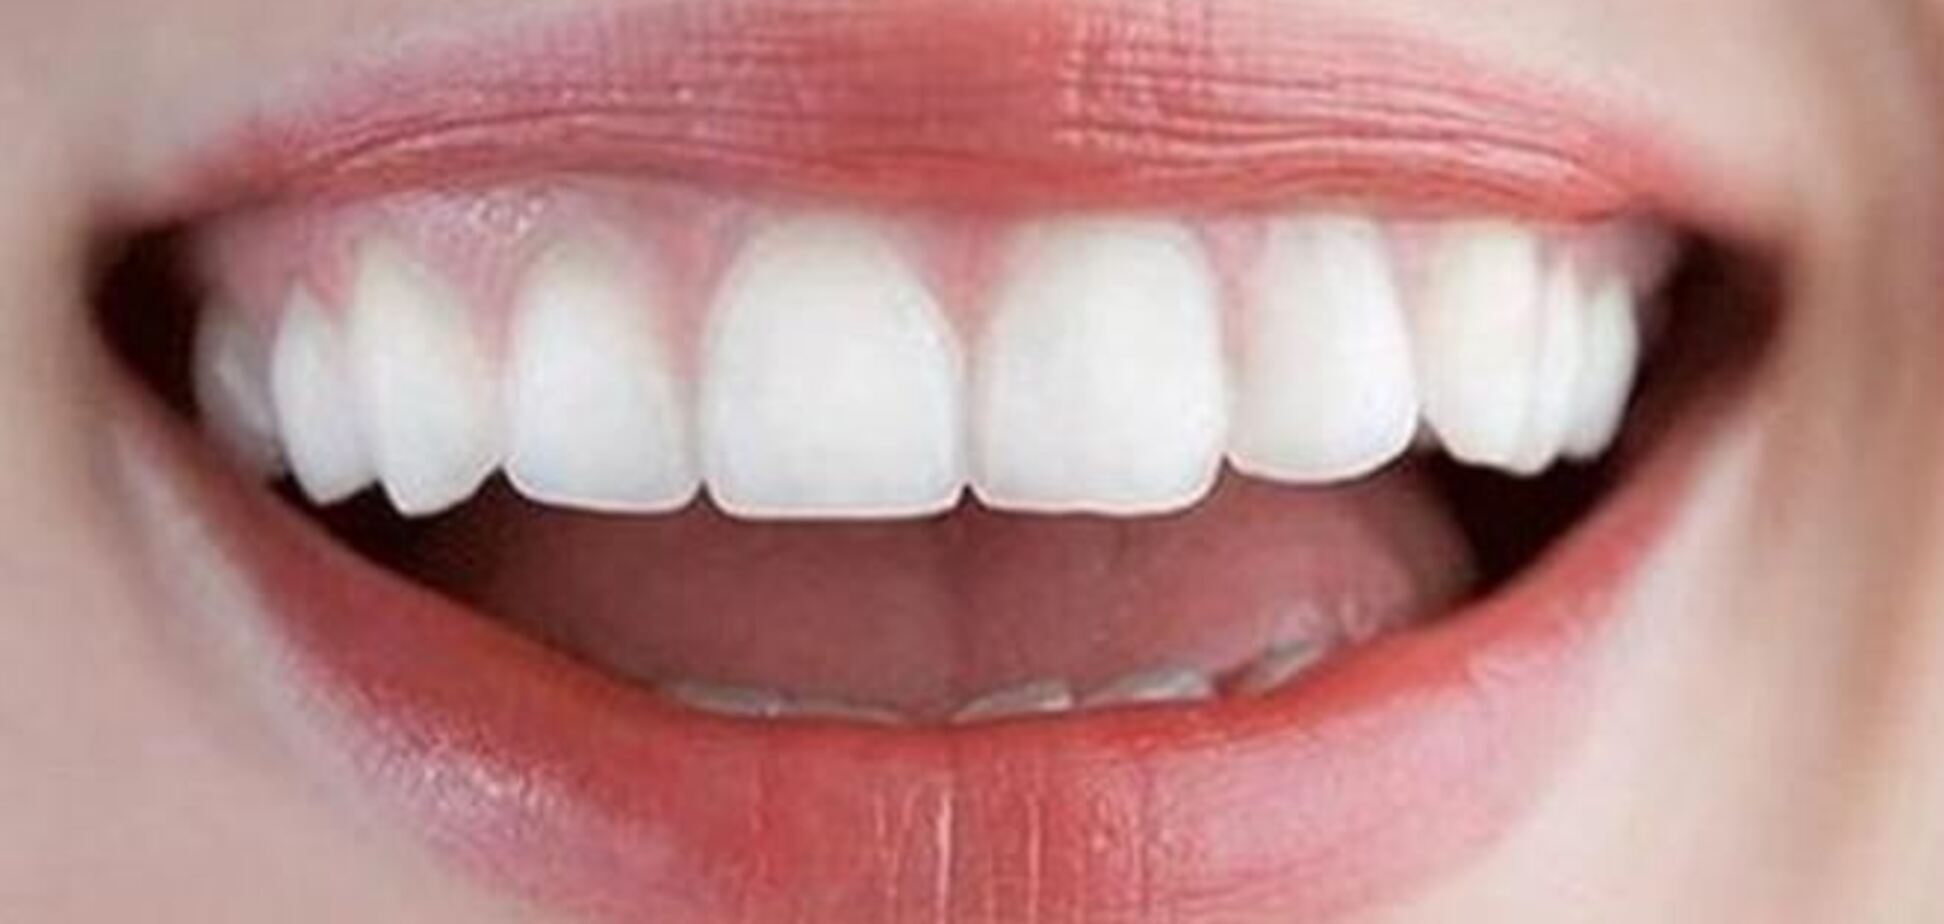 Продолжительность жизни человека зависит от количества его зубов